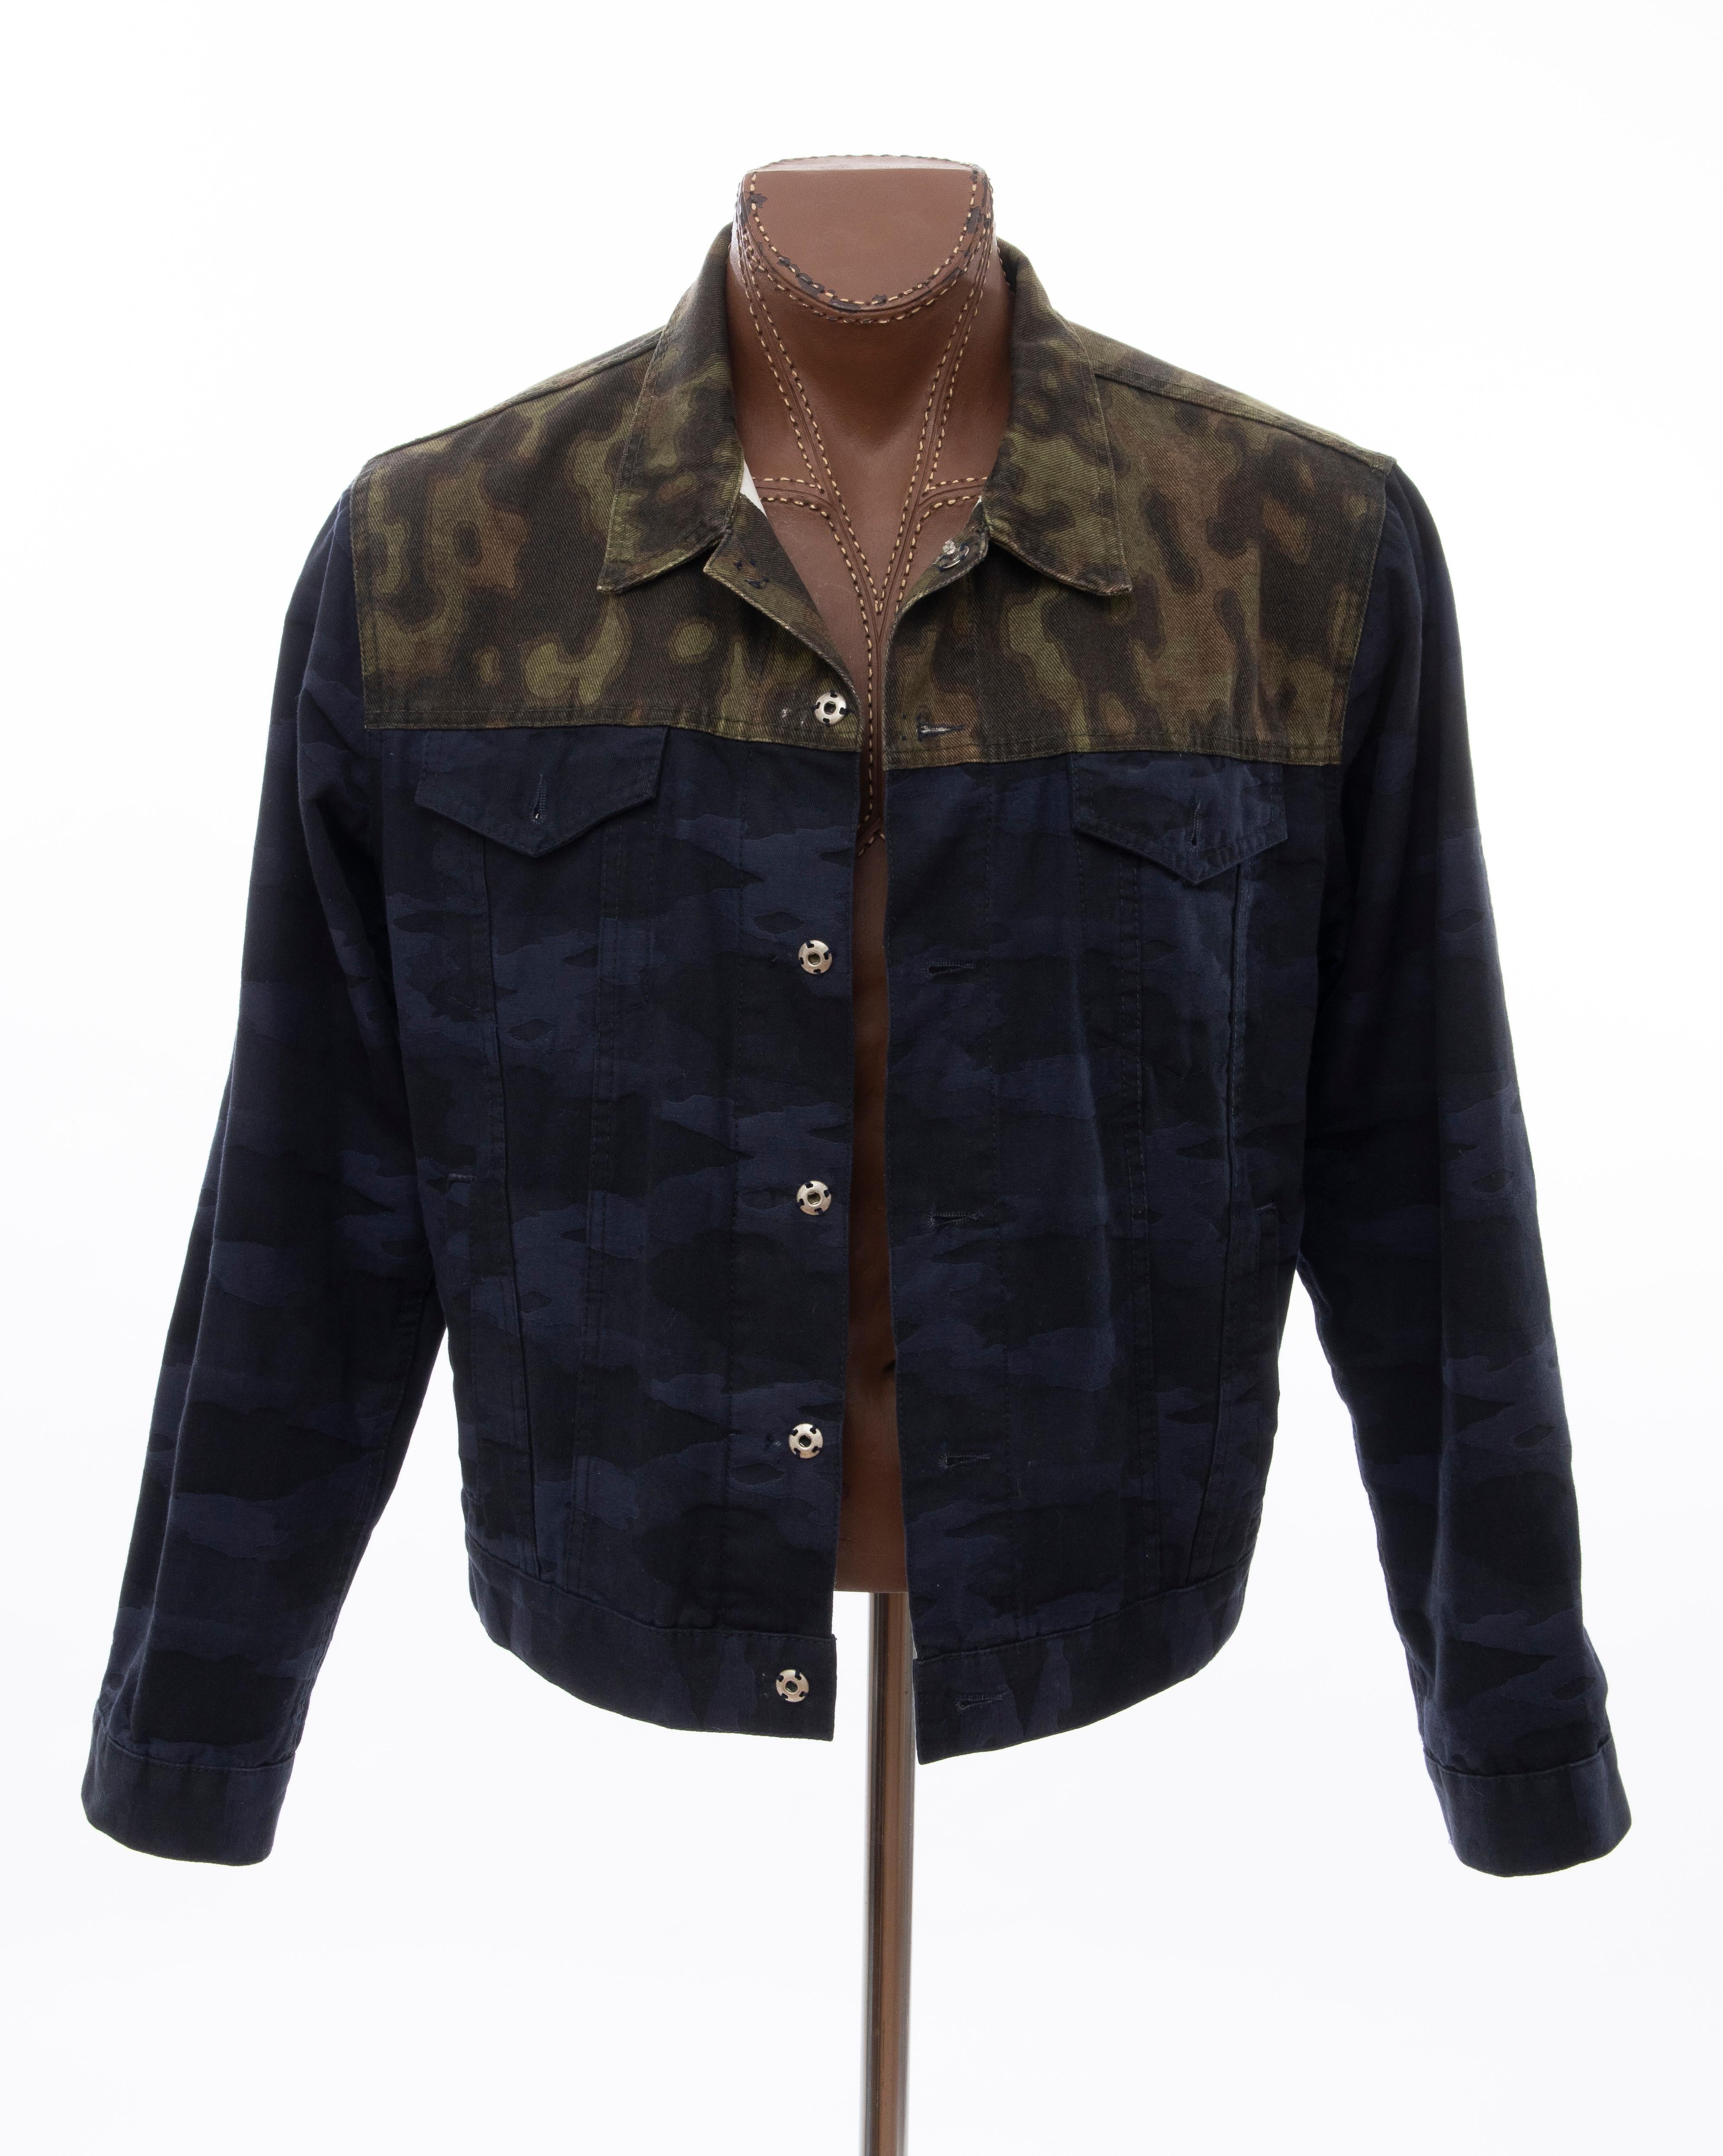 Dries van Noten Runway Men's Cotton Camouflage Chore Jacket, Spring 2013 9